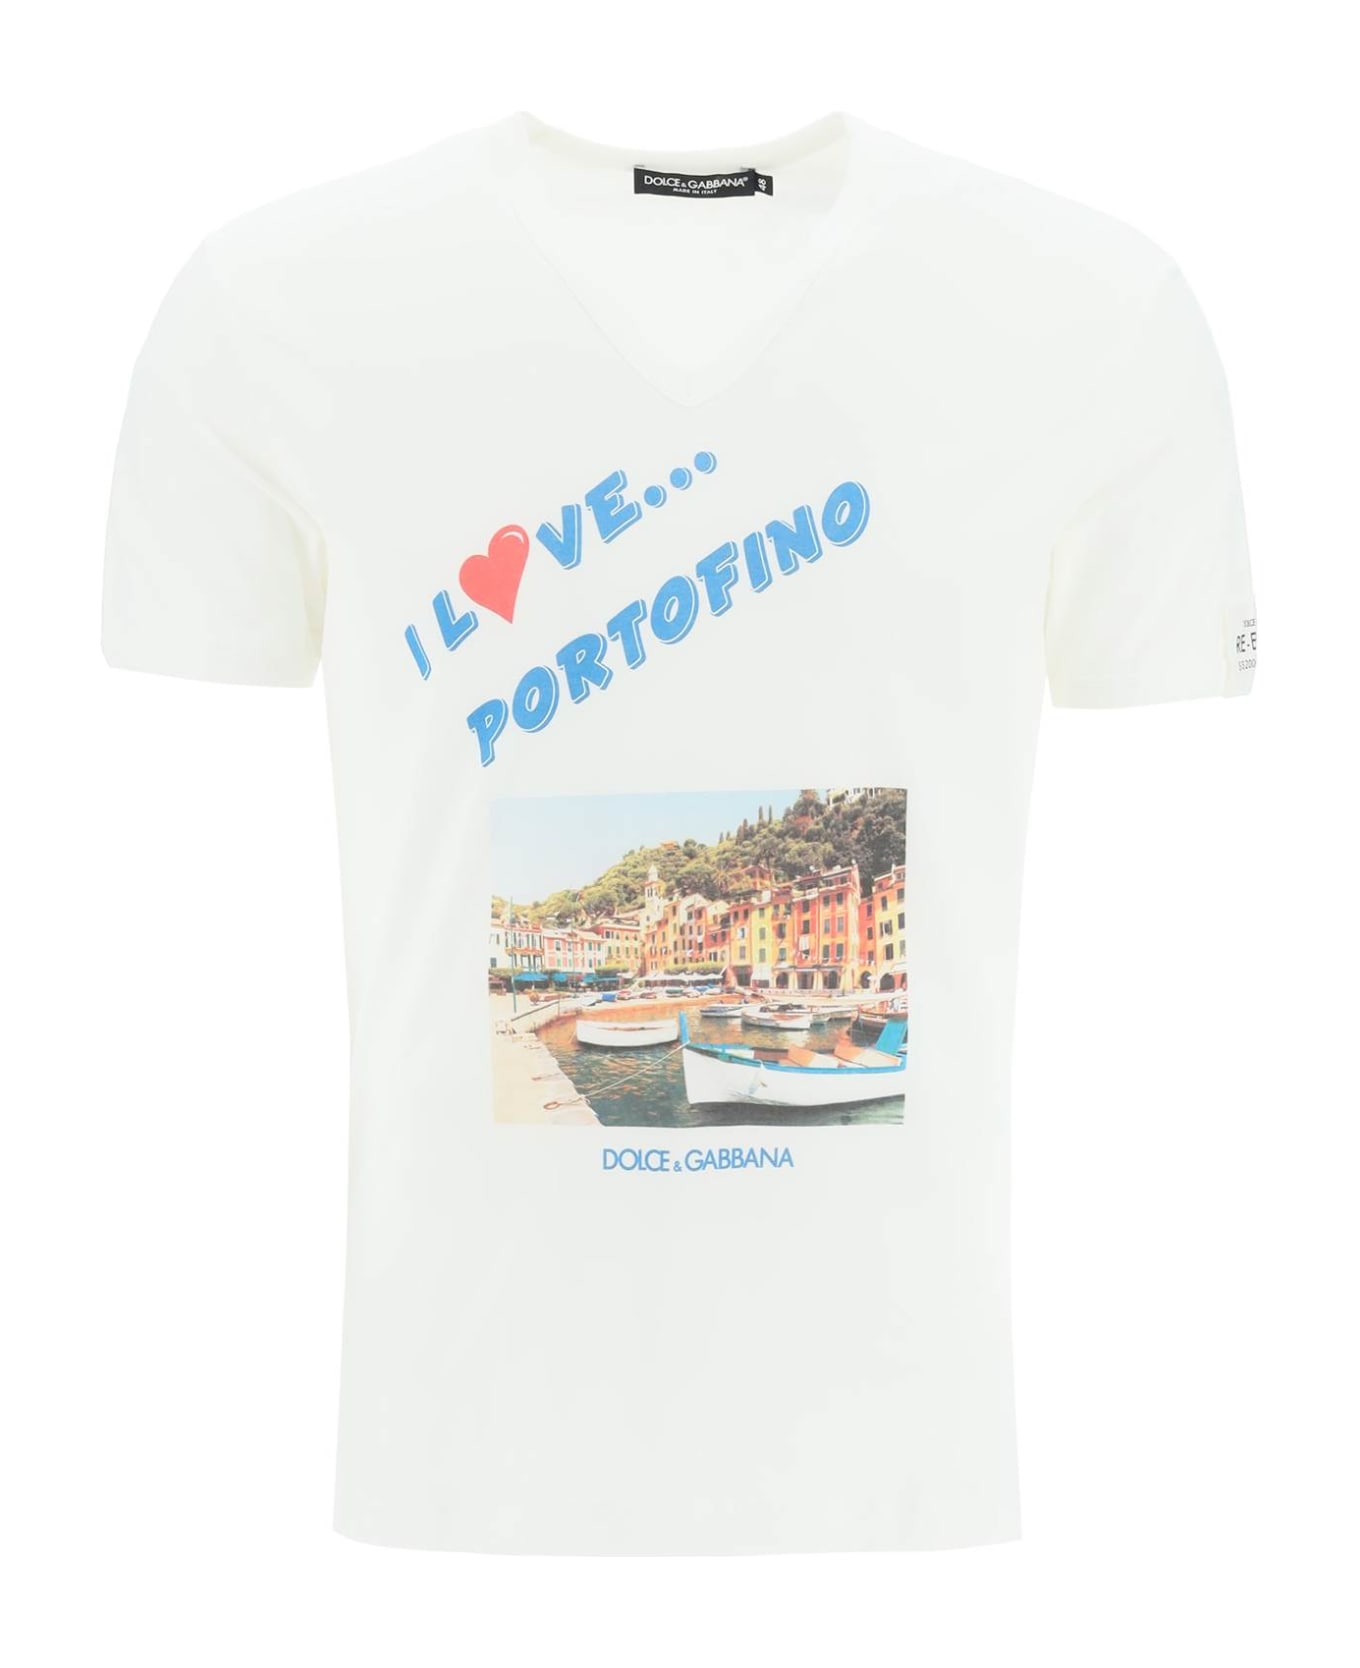 Dolce & Gabbana Portofino Print Re-edition T-shirt - VARIANTE ABBINATA (White)